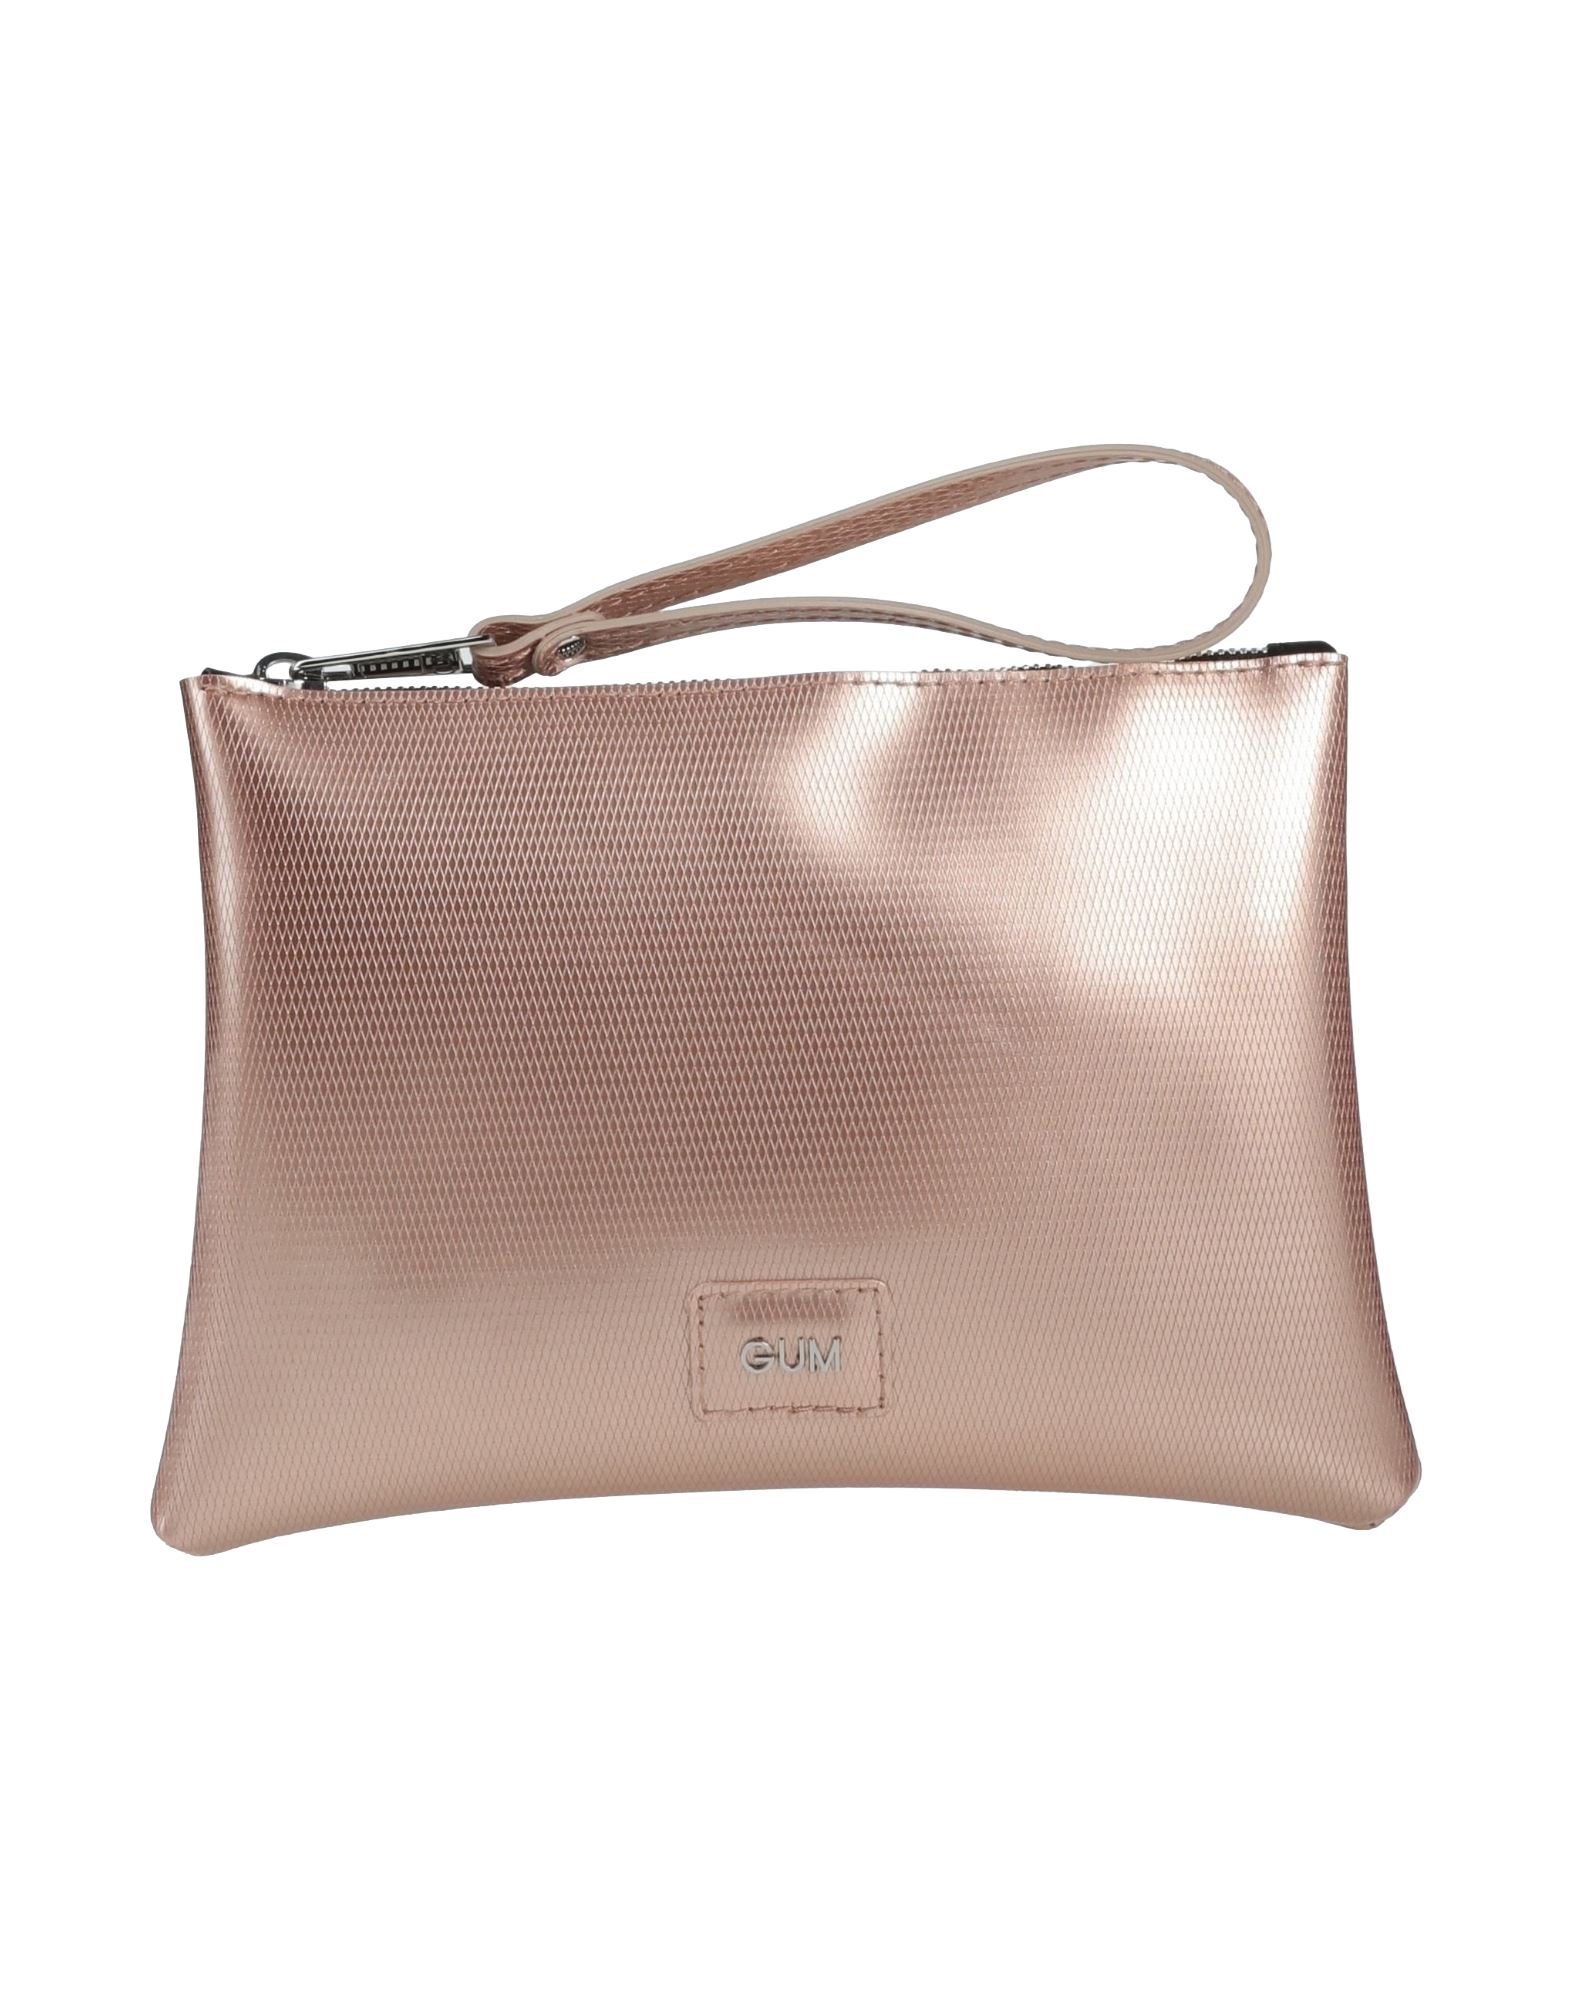 Gum Design Handbags In Rose Gold